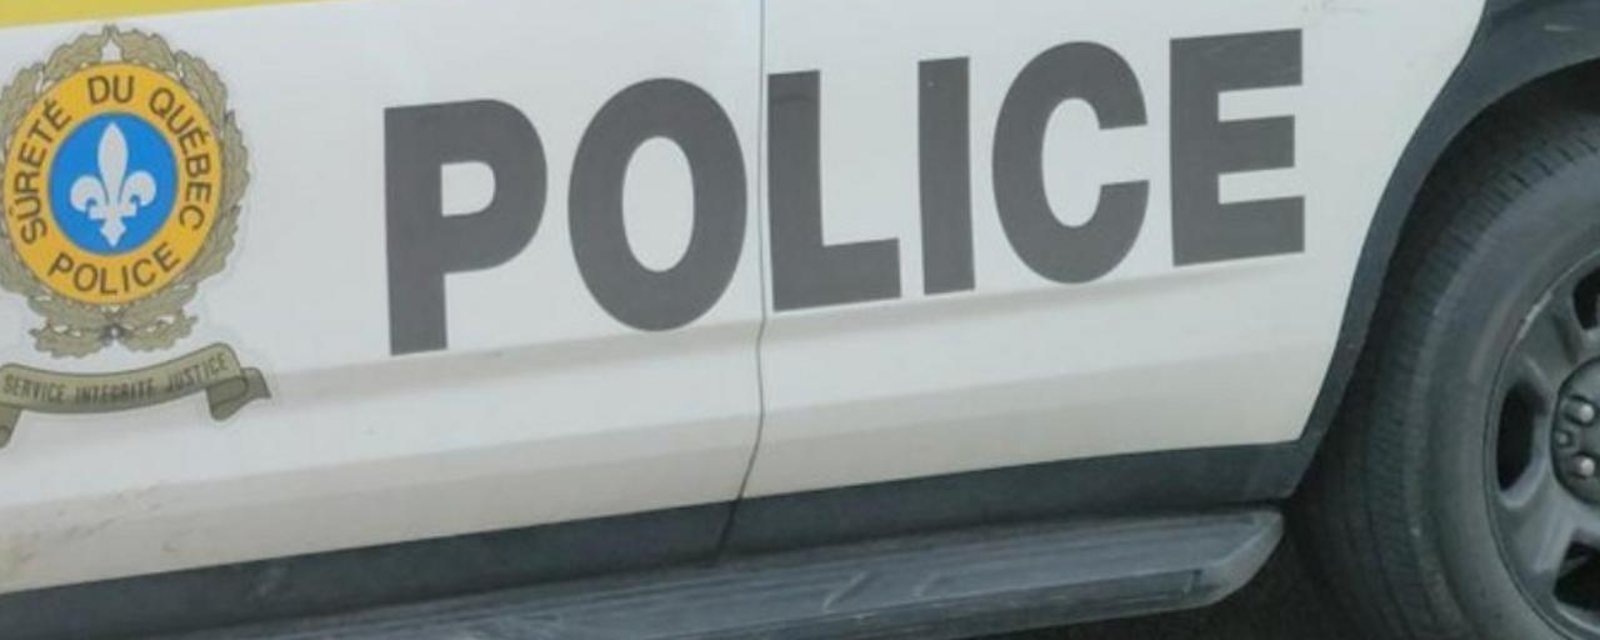 Un camionneur est accusé d’avoir provoqué la mort d’une fillette de 9 ans à Saint-Roch-de-l’Achigan.